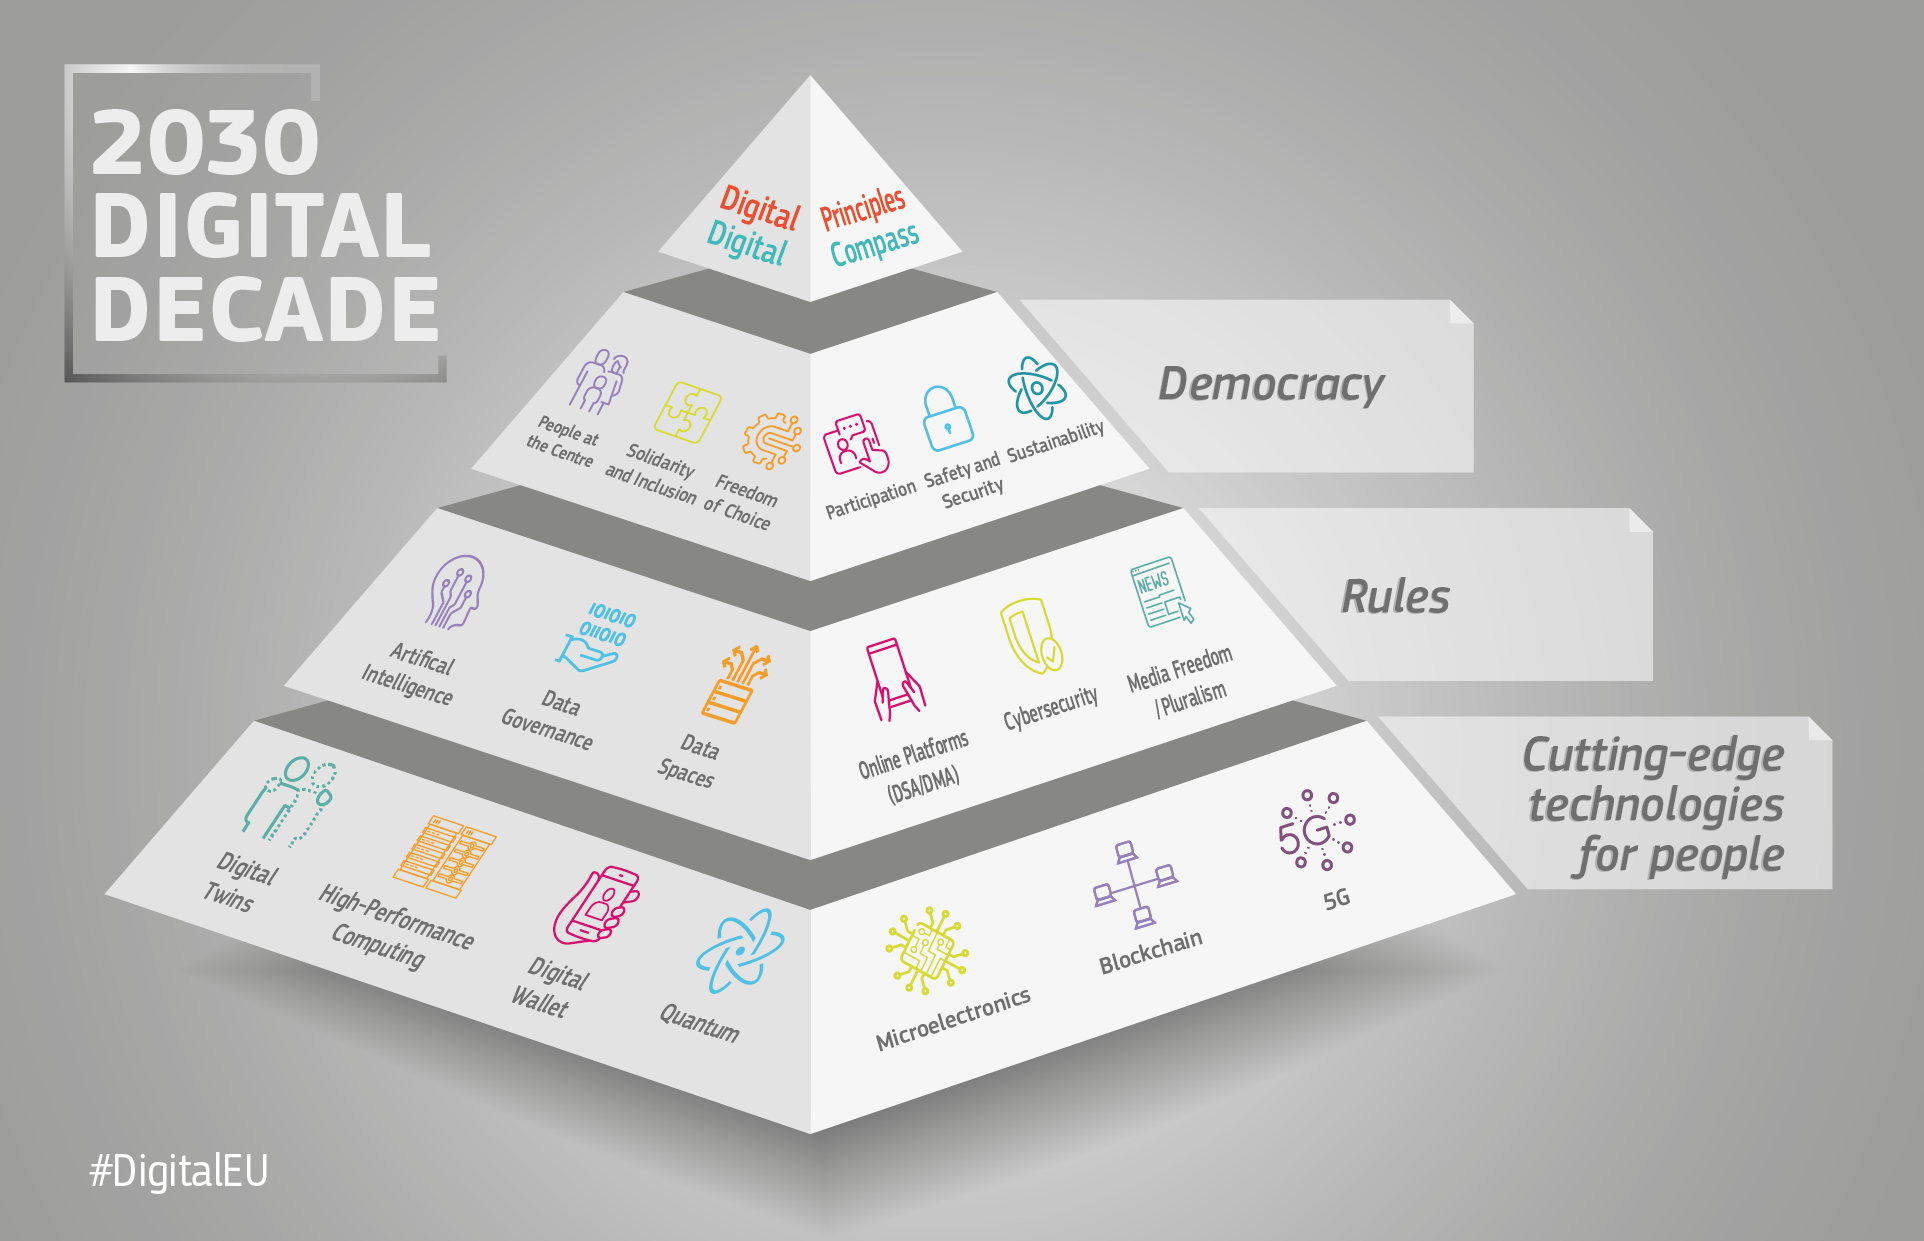 pirâmide mostrando a conexão das políticas e iniciativas da década digital